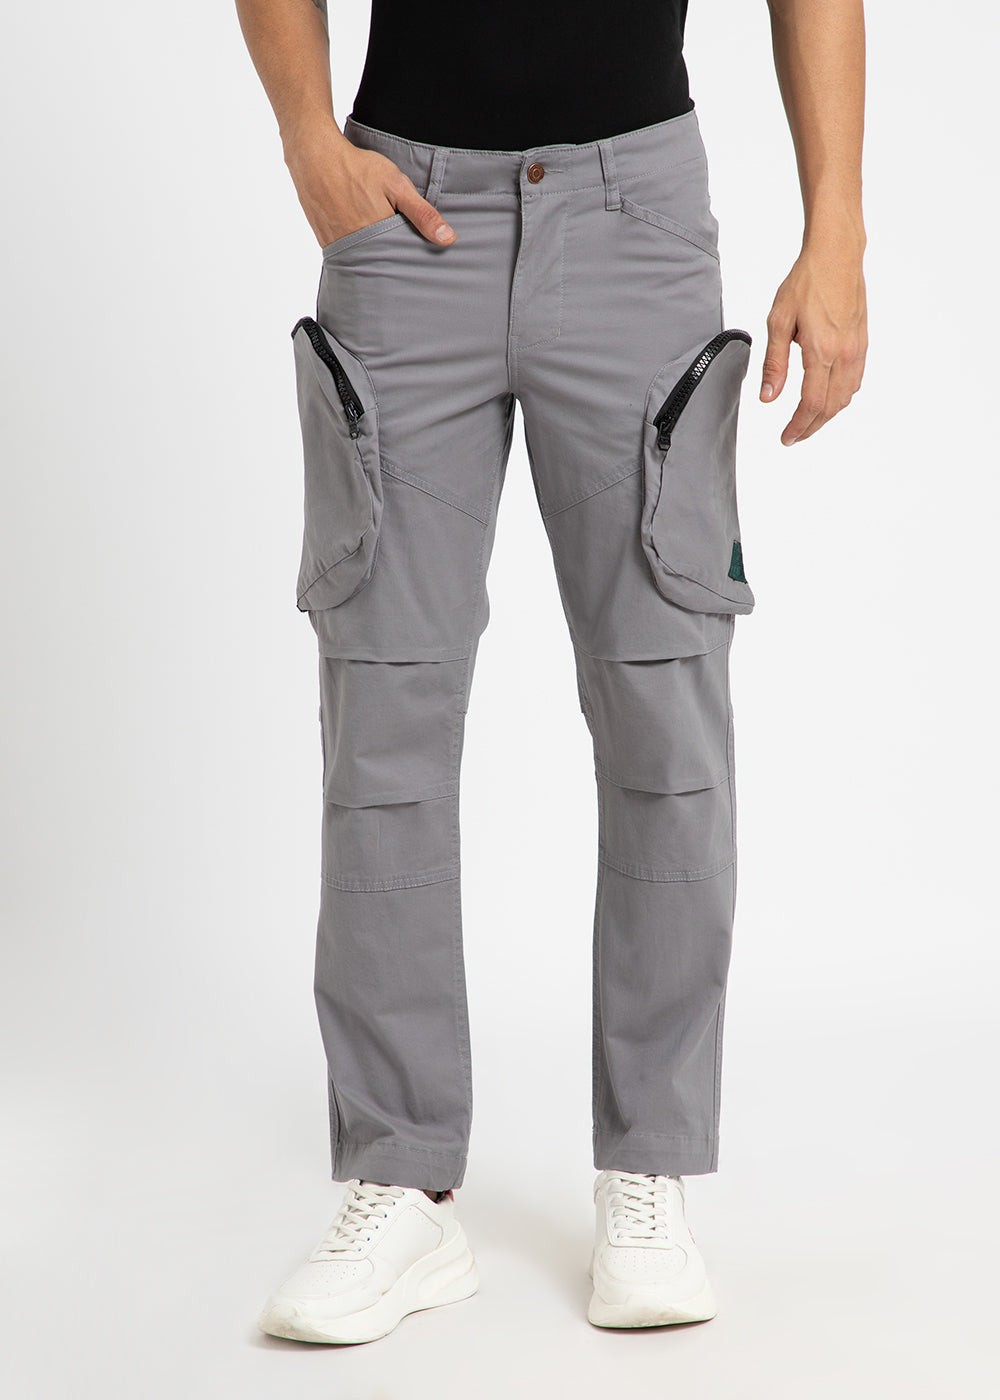 Oslo Gray Zipper Cargo Pant